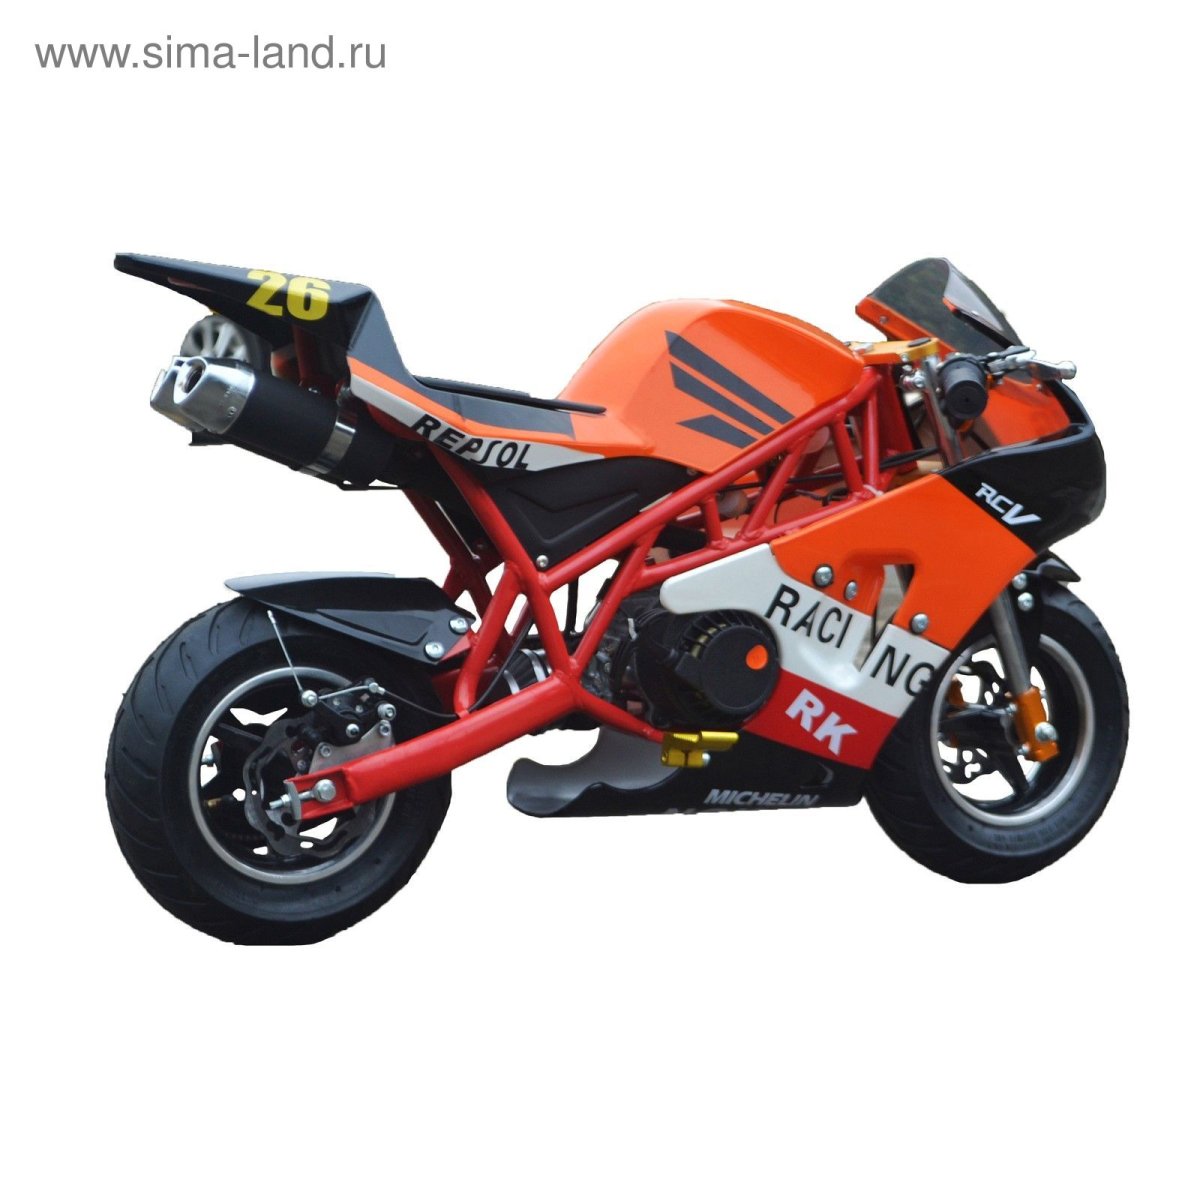 MOTAX 50 СС В стиле Ducati